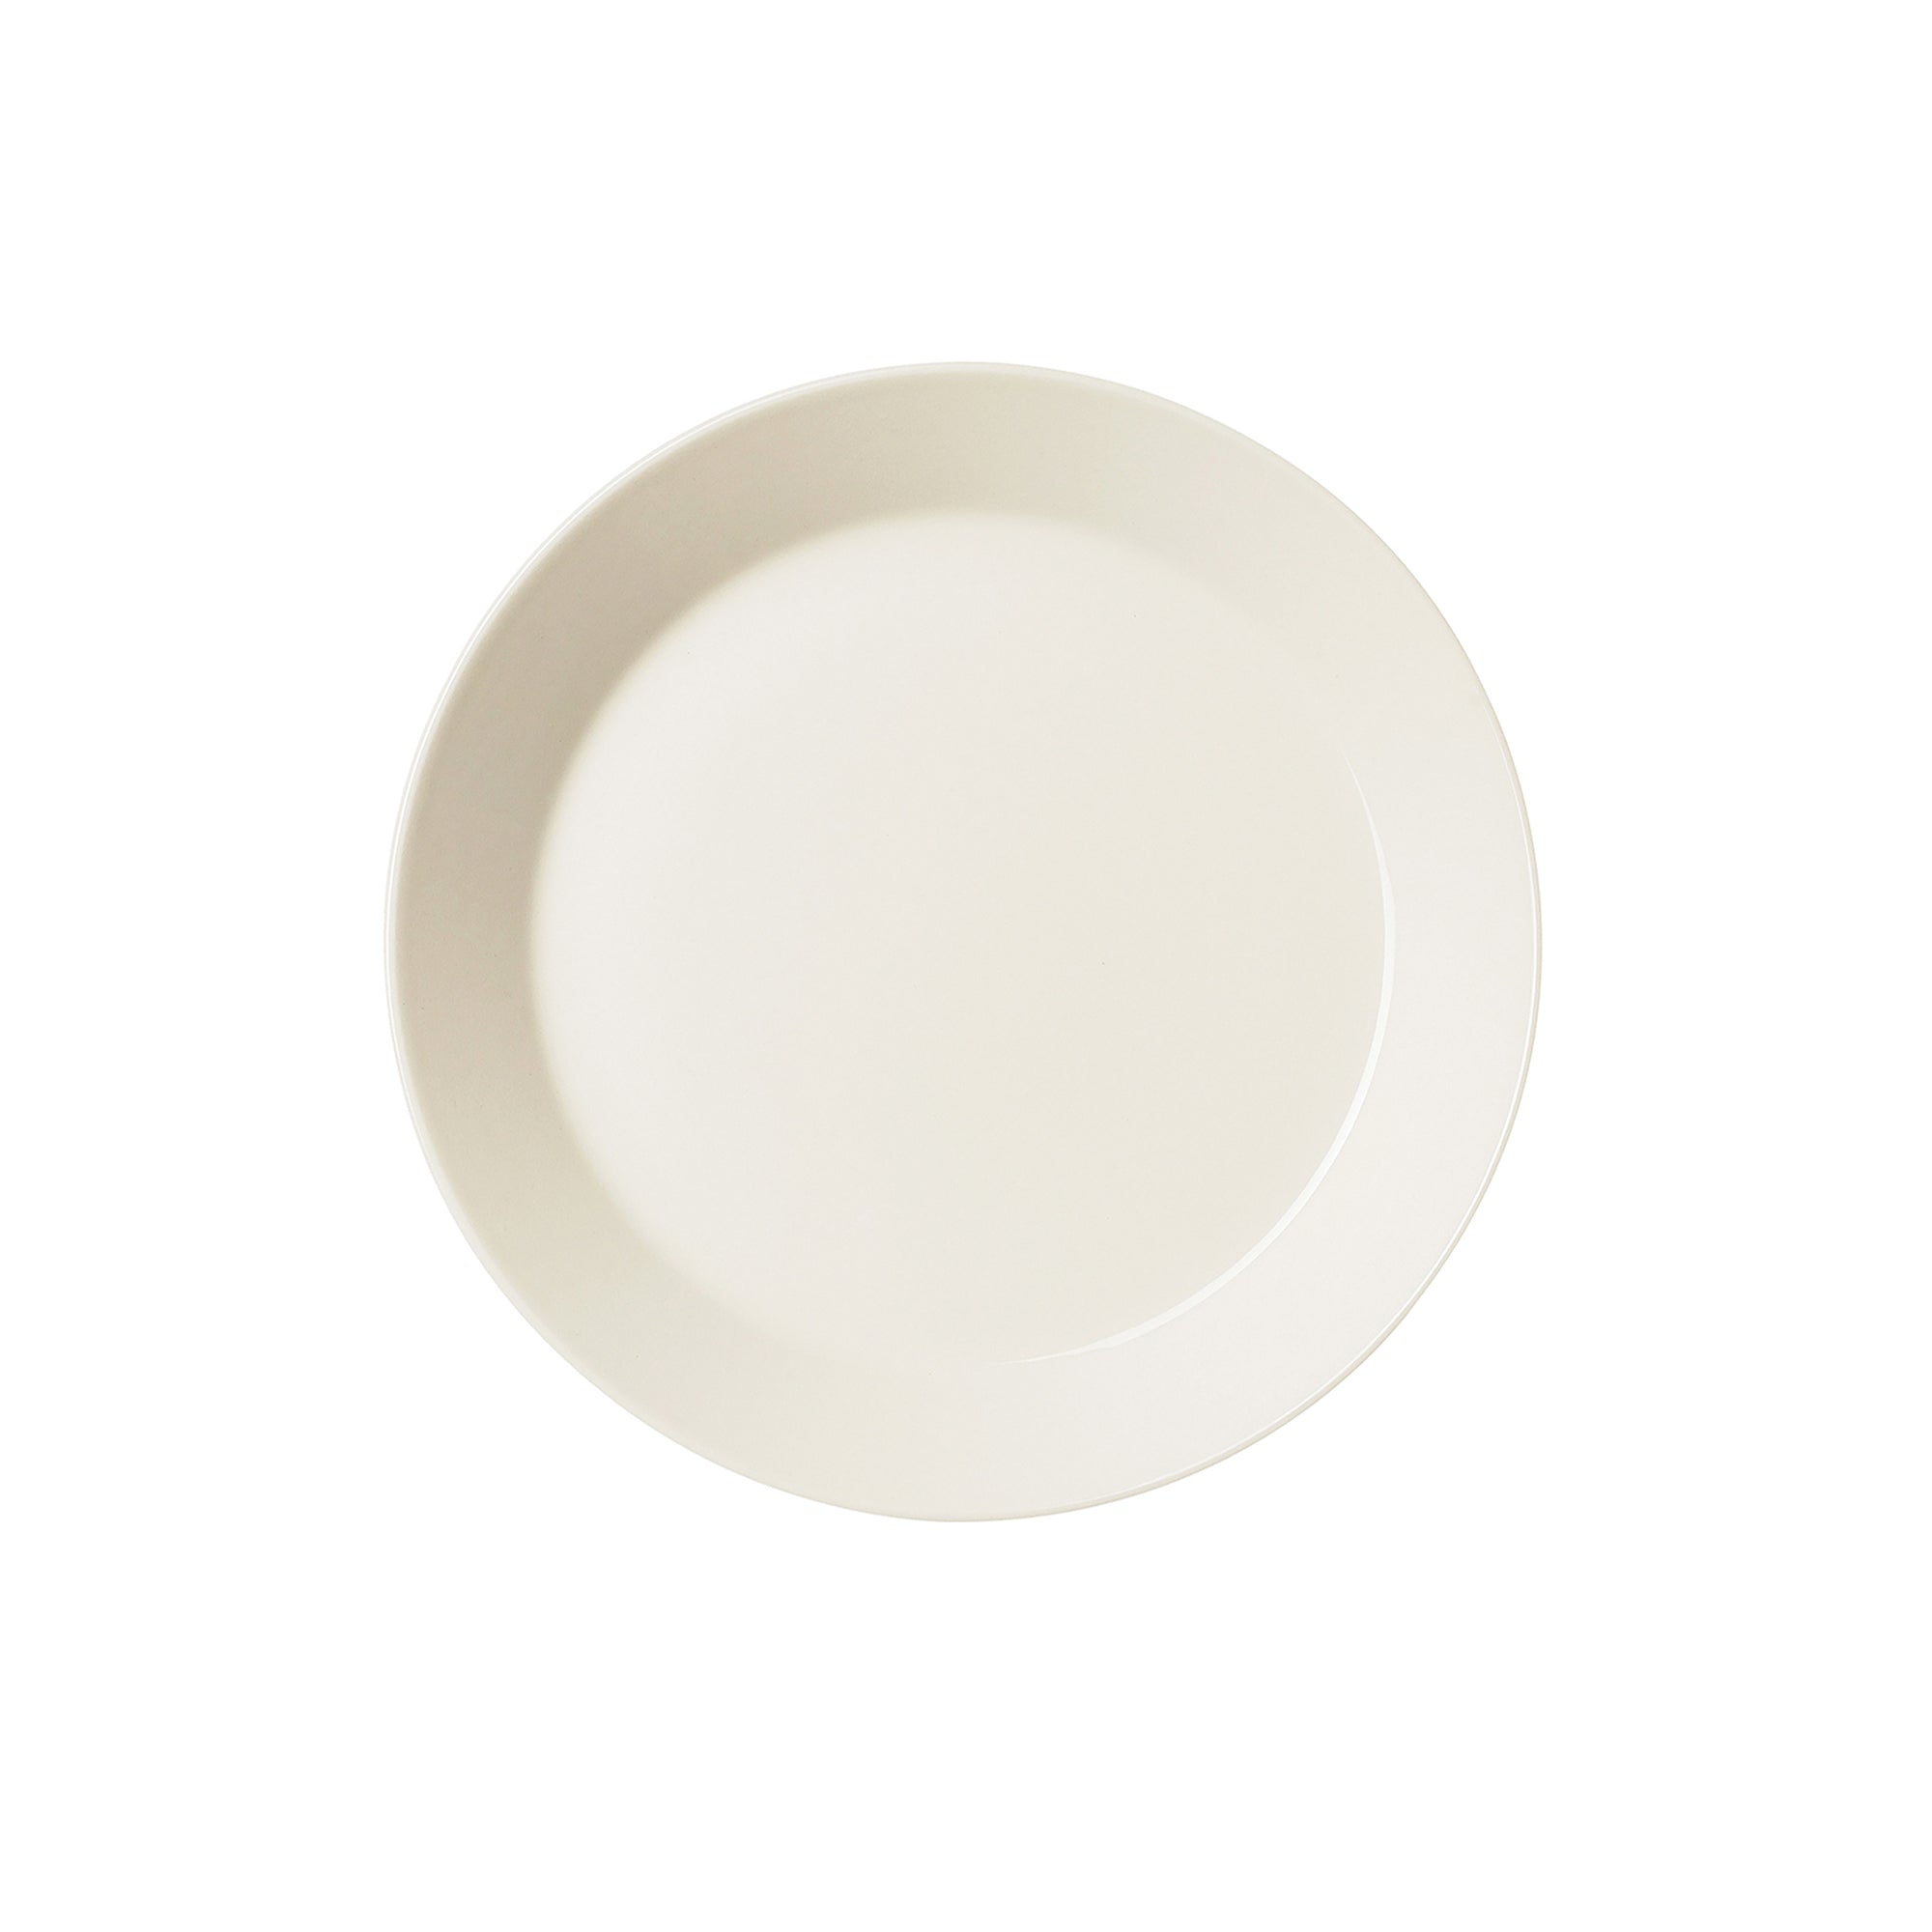 Teema White Salad Plate, 8.25"